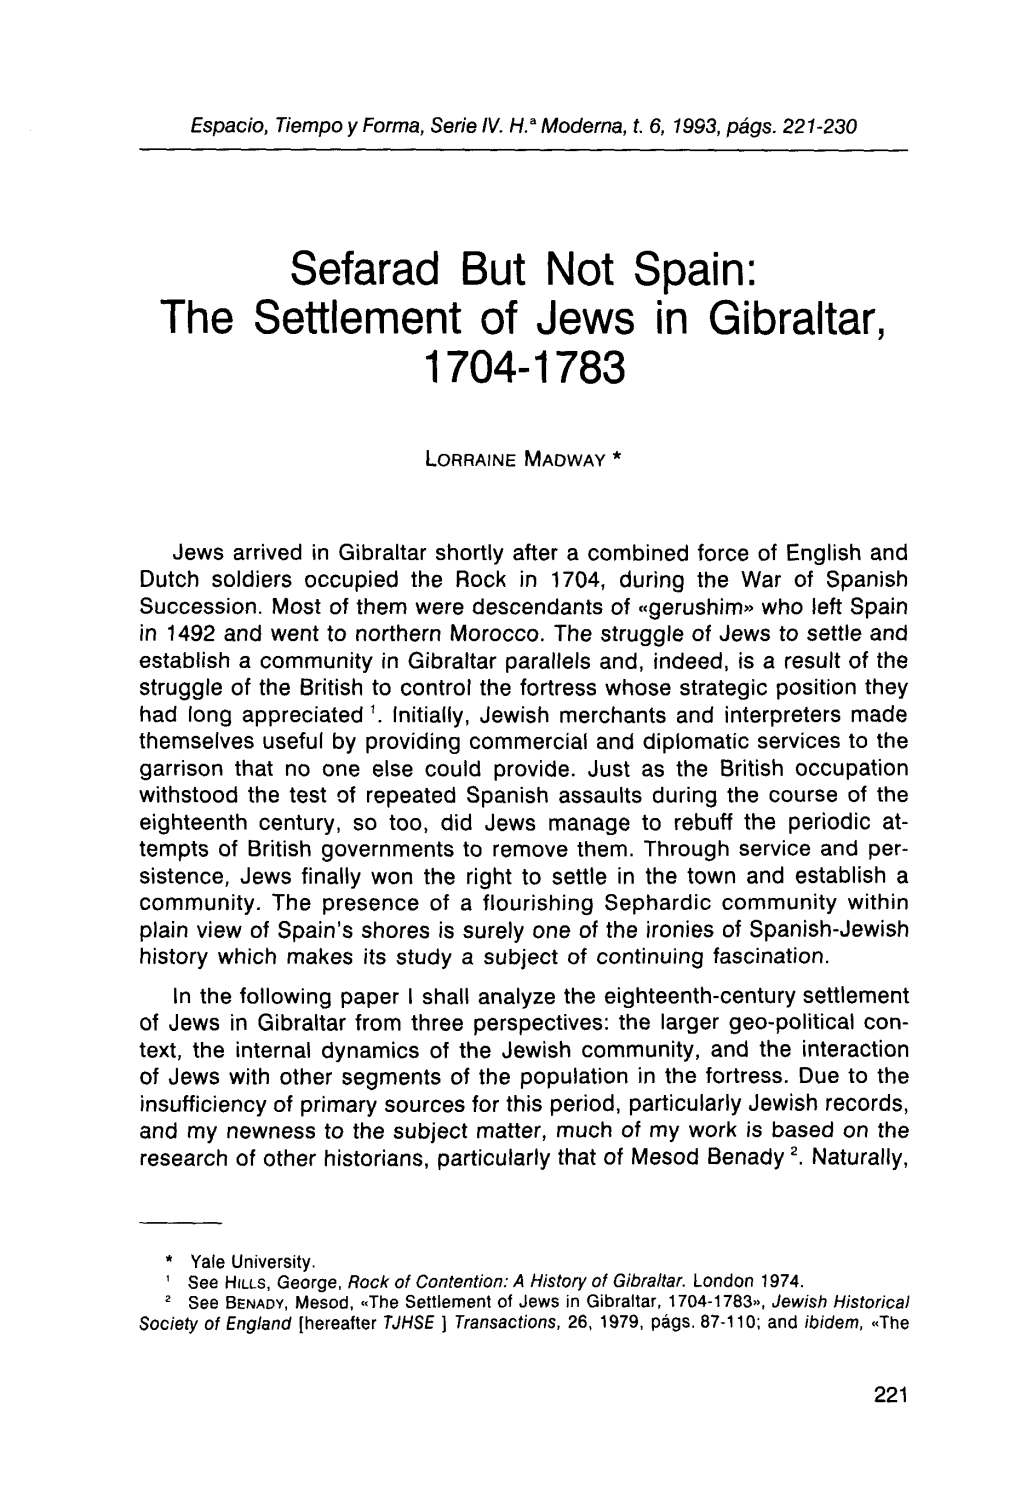 Sefarad but Not Spain. Jews in Gibraltar 1704-1783